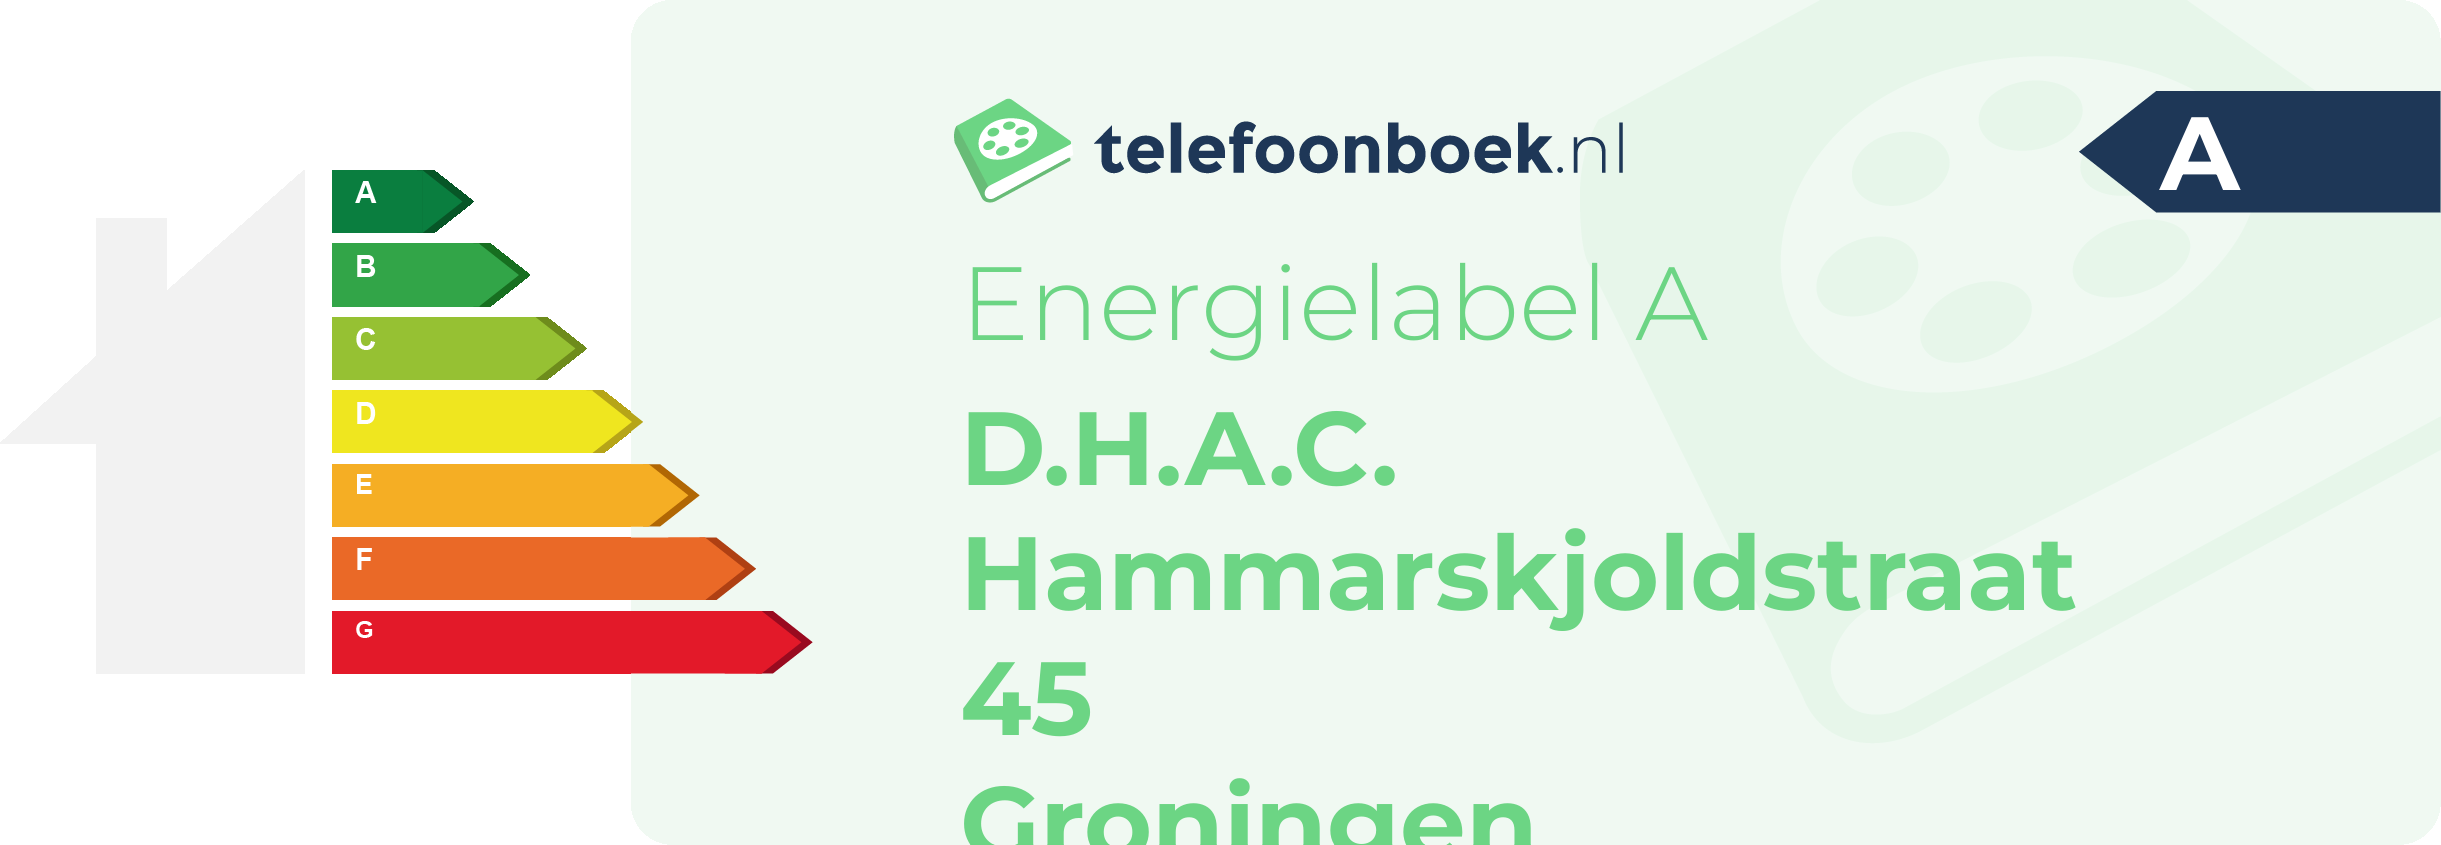 Energielabel D.H.A.C. Hammarskjoldstraat 45 Groningen